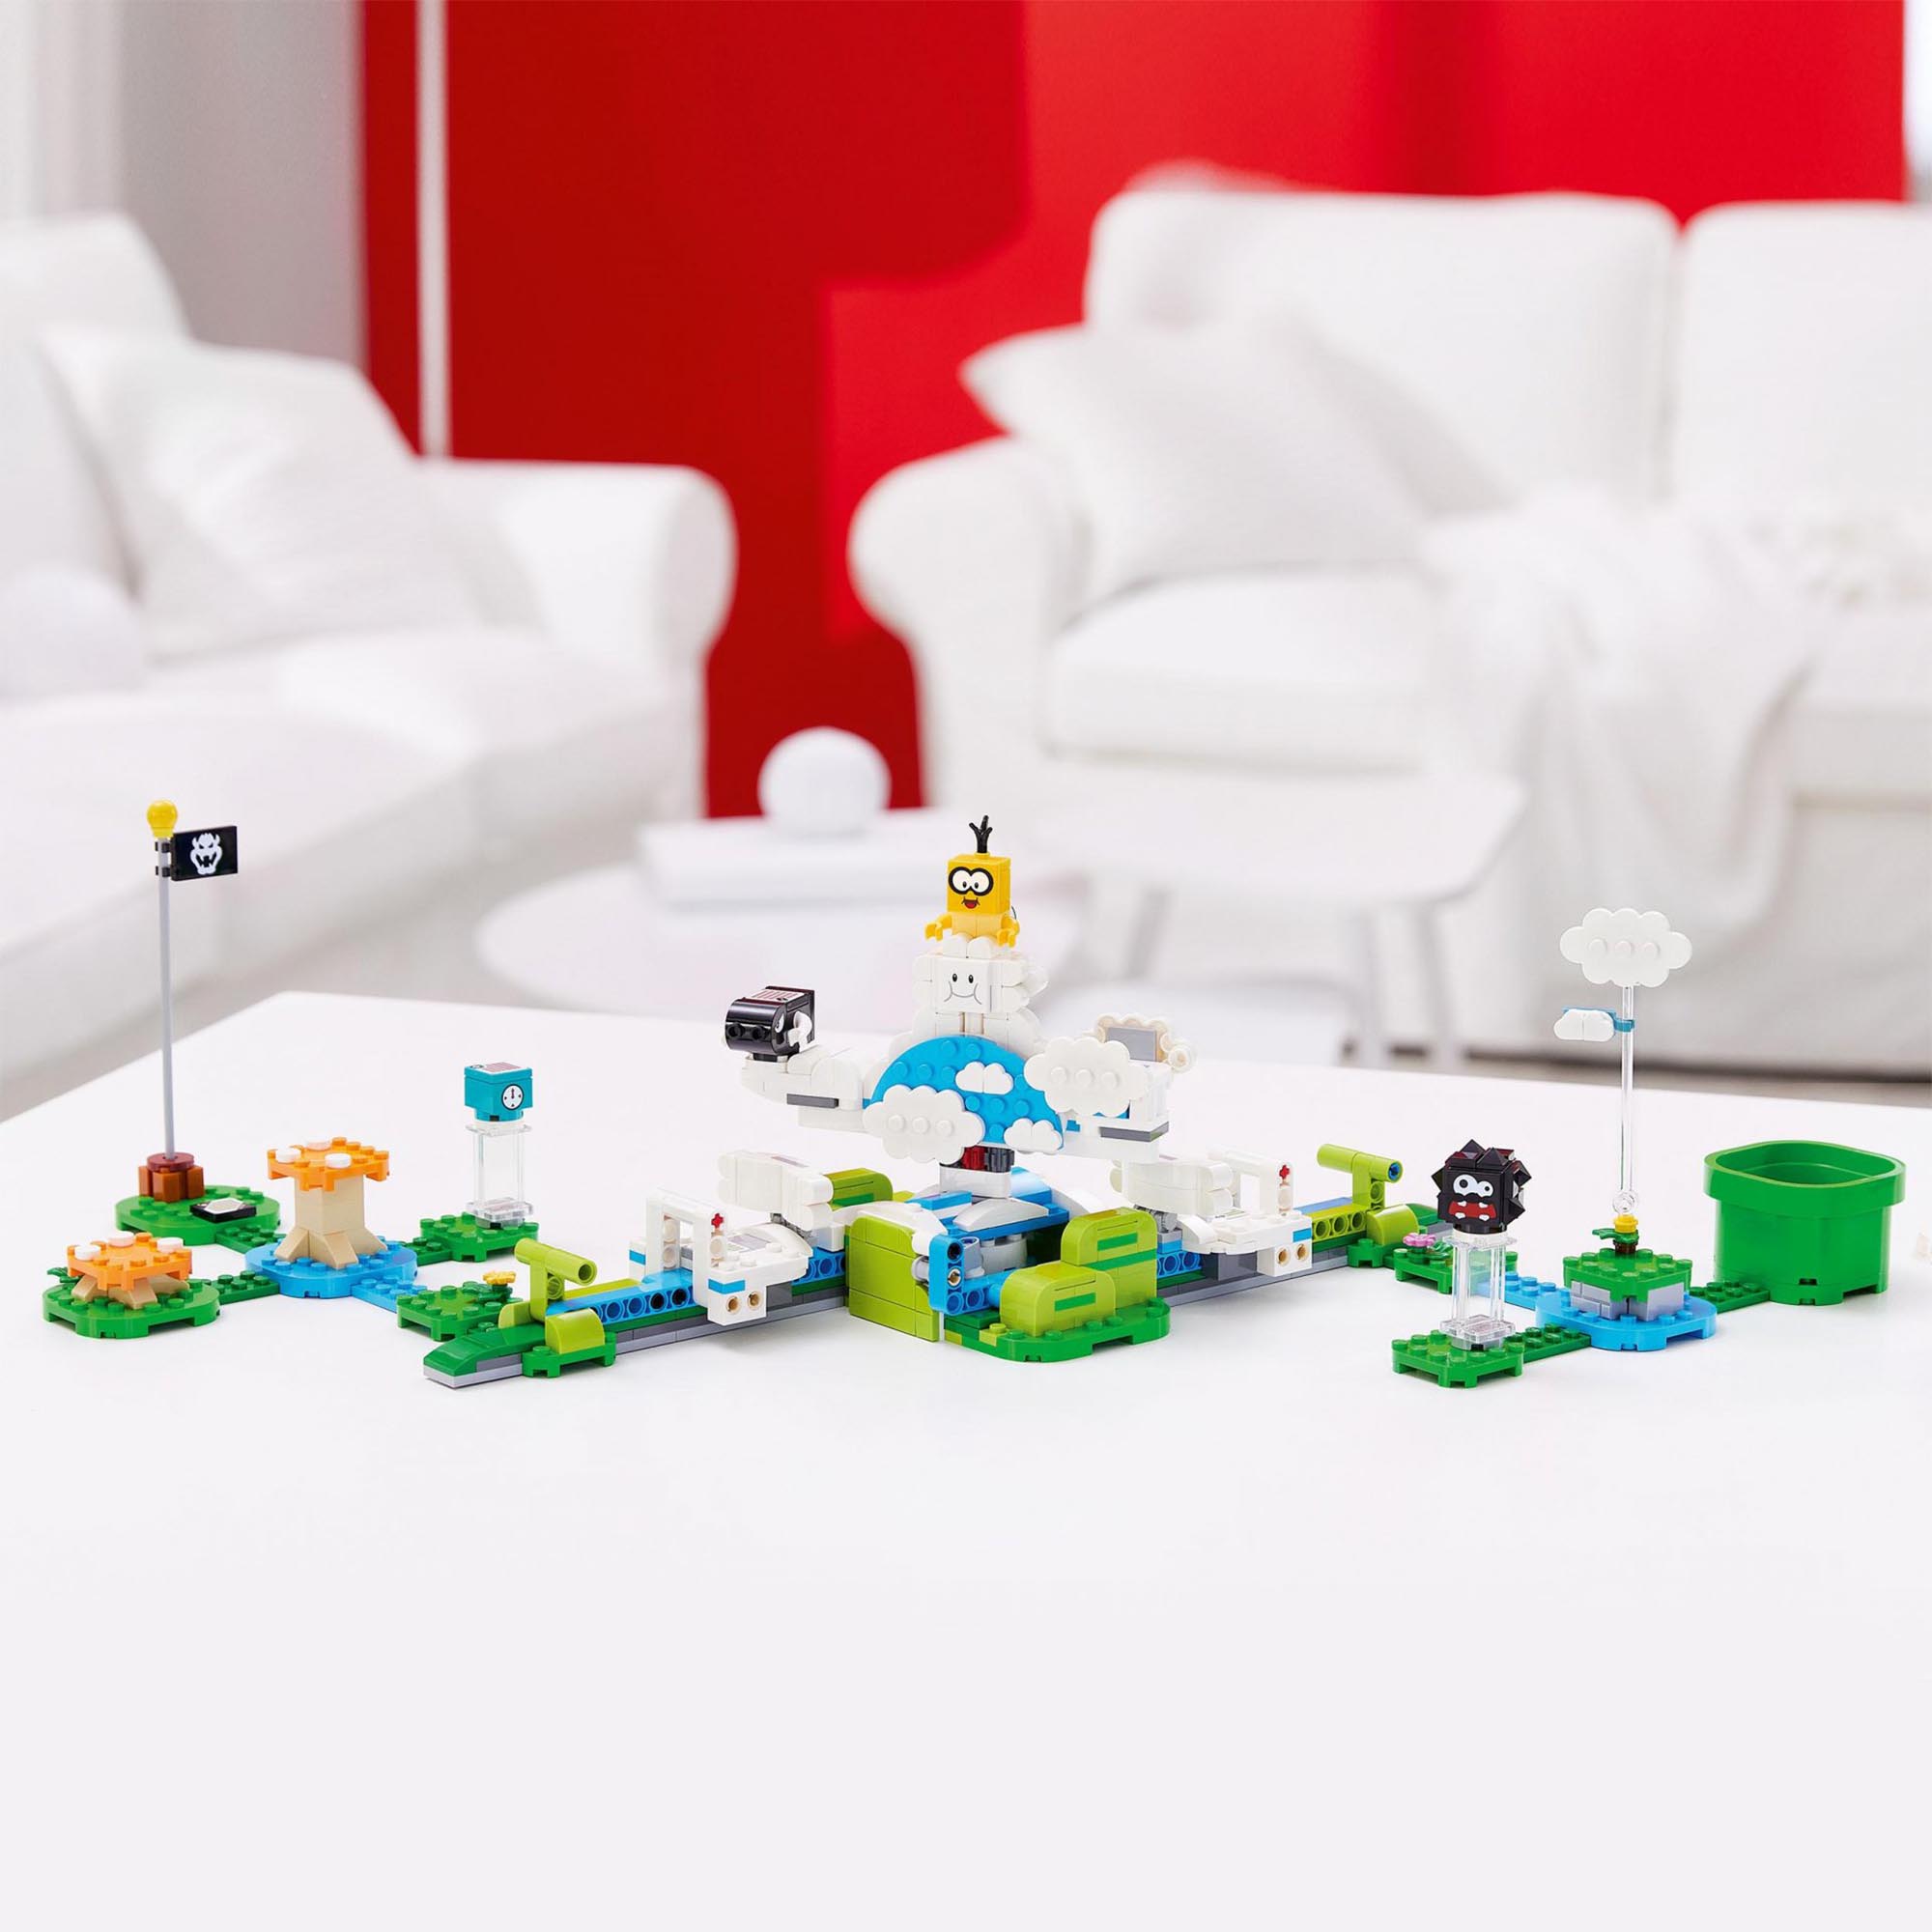 LEGO Super Mario Il Mondo-Cielo di Lakitu - Pack di Espansione, Giocattoli da Co 71389, , large